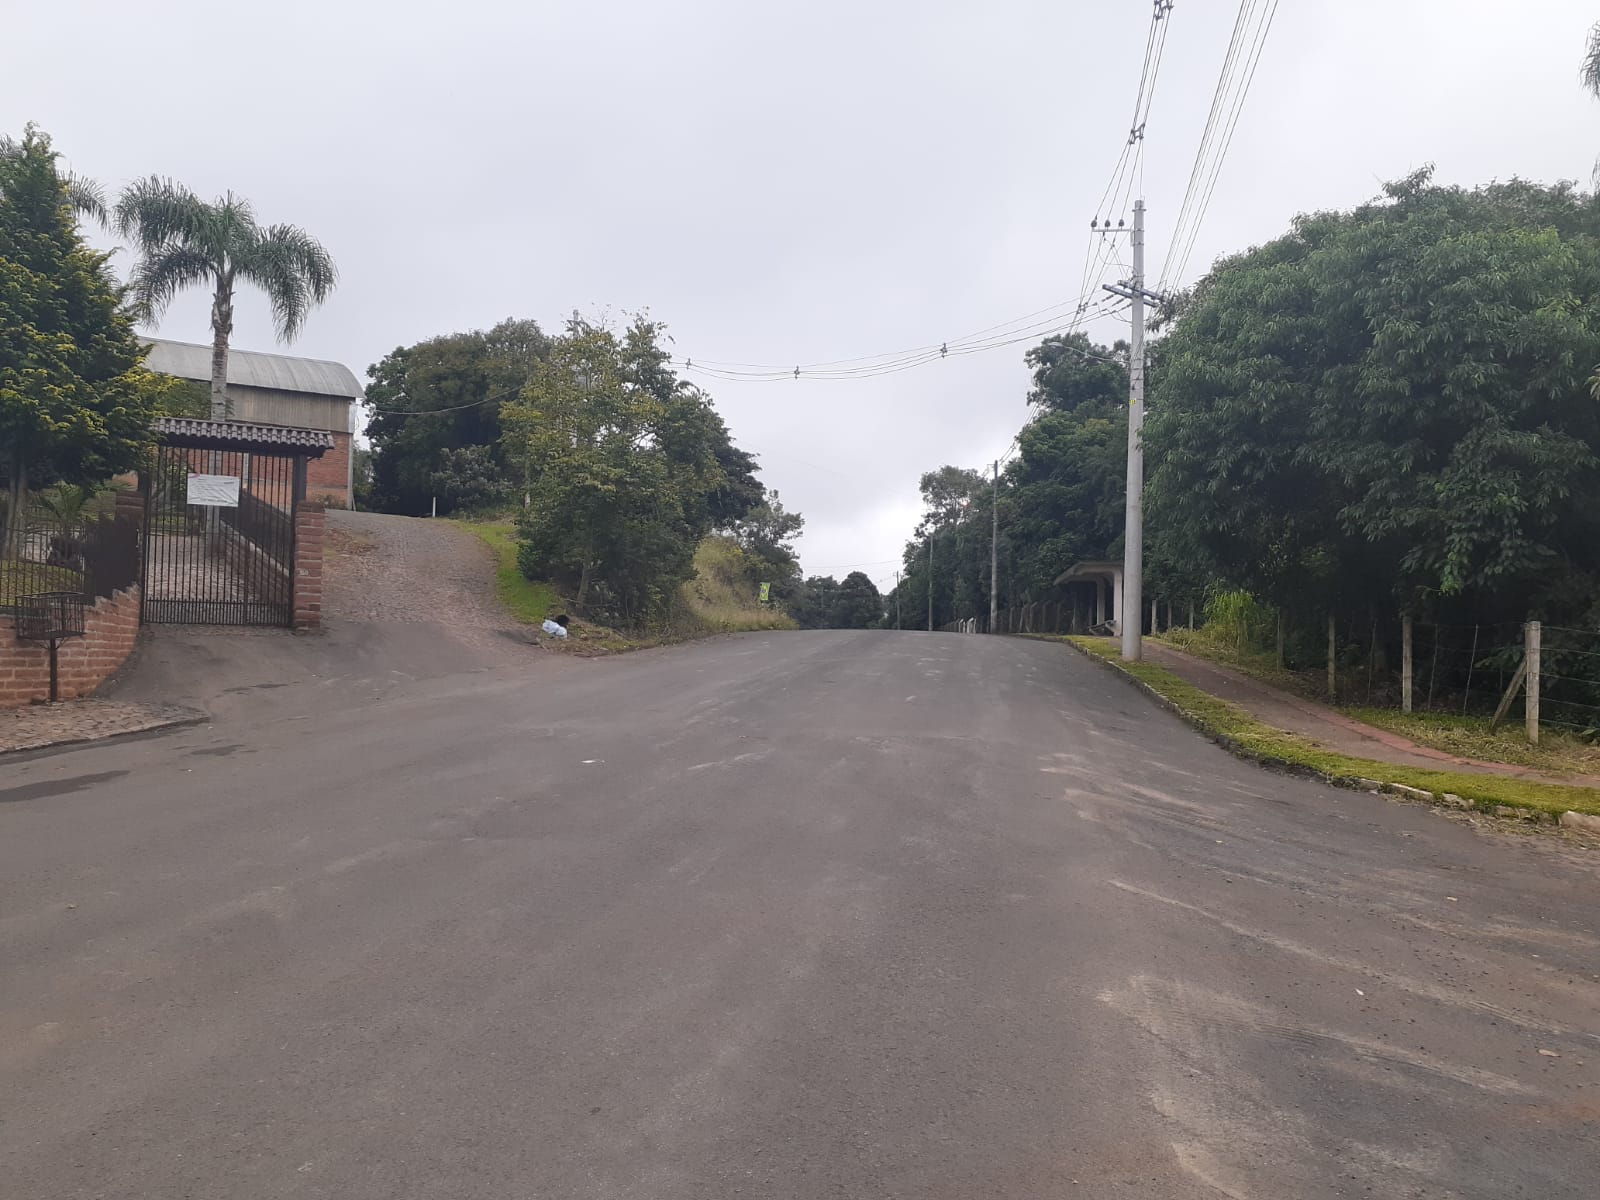  Bairro Jabuticabal: mais 13 ruas recuperadas e asfaltadas